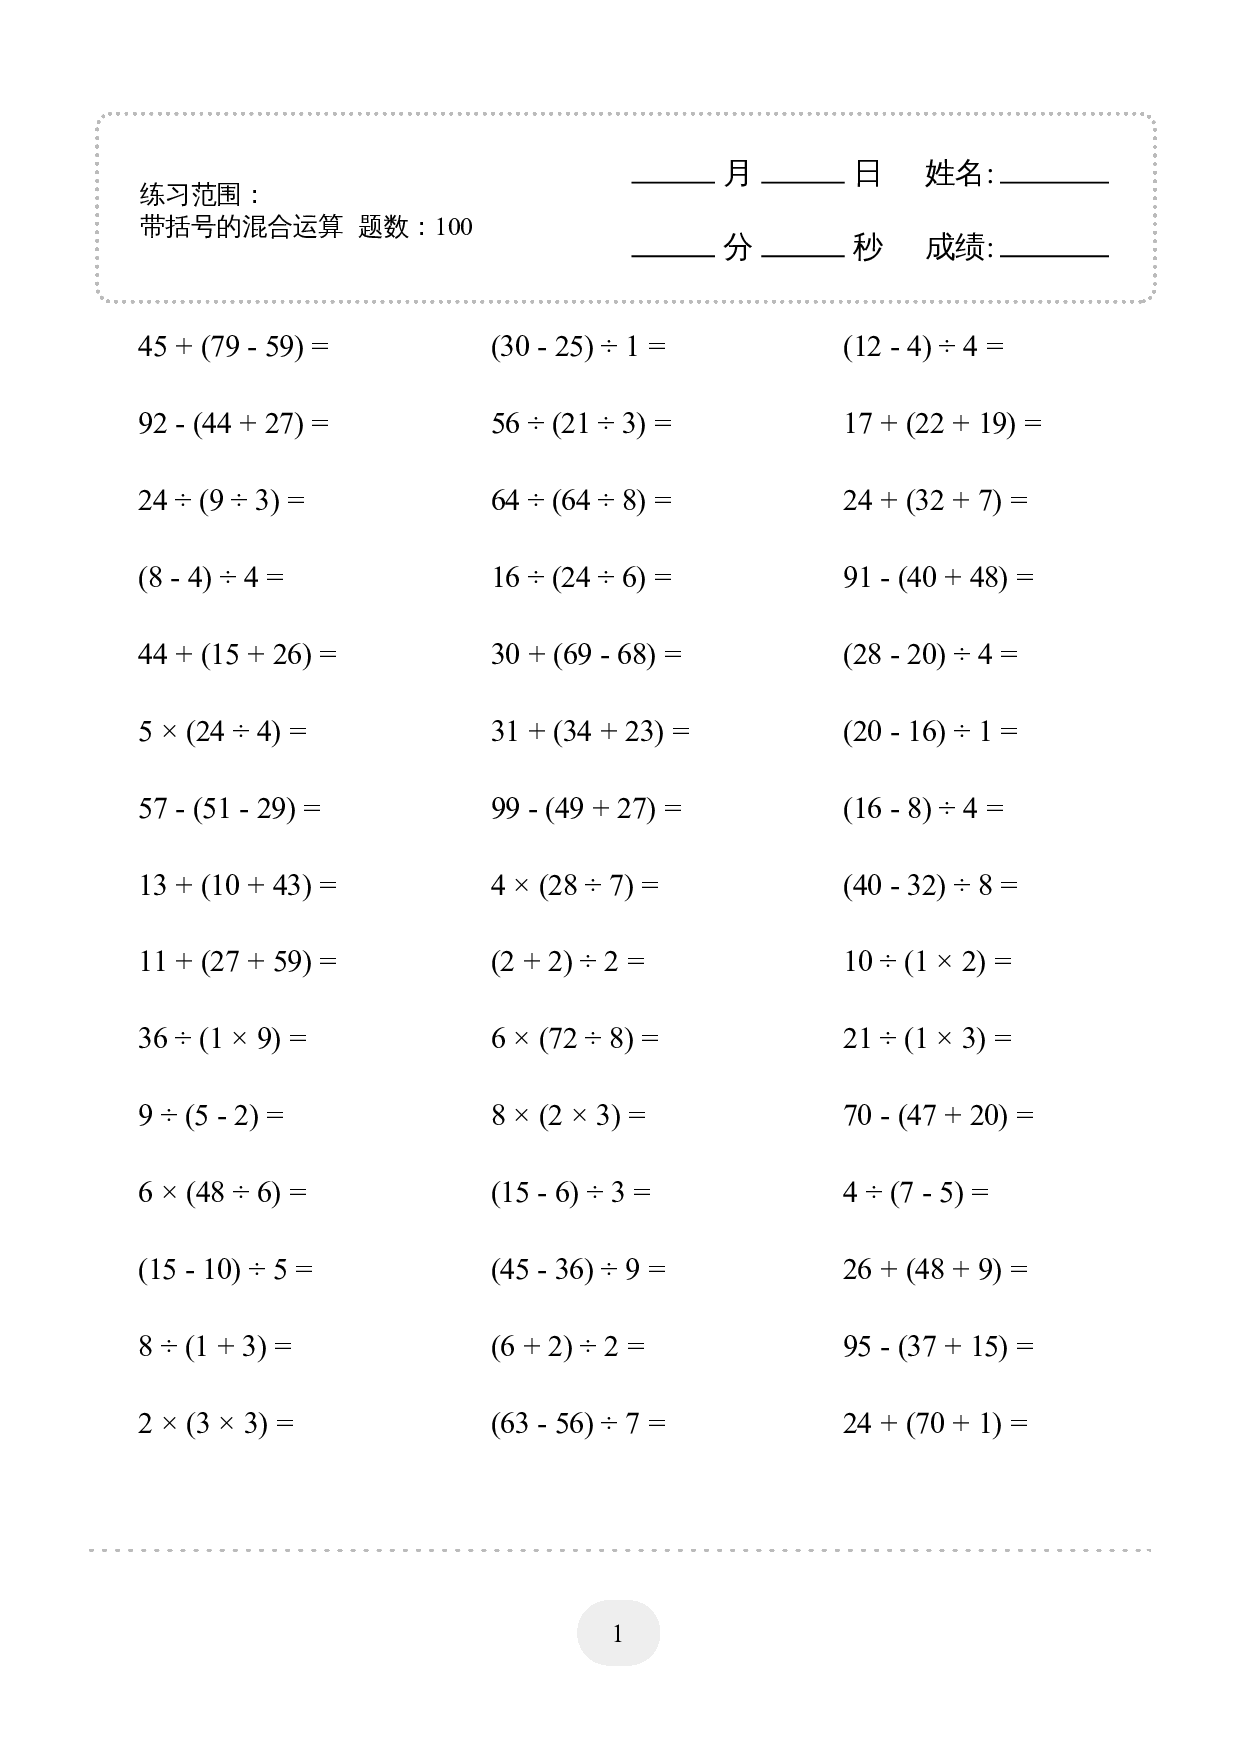 2年级下册数学口算题 (带括号的混合运算) 1000题